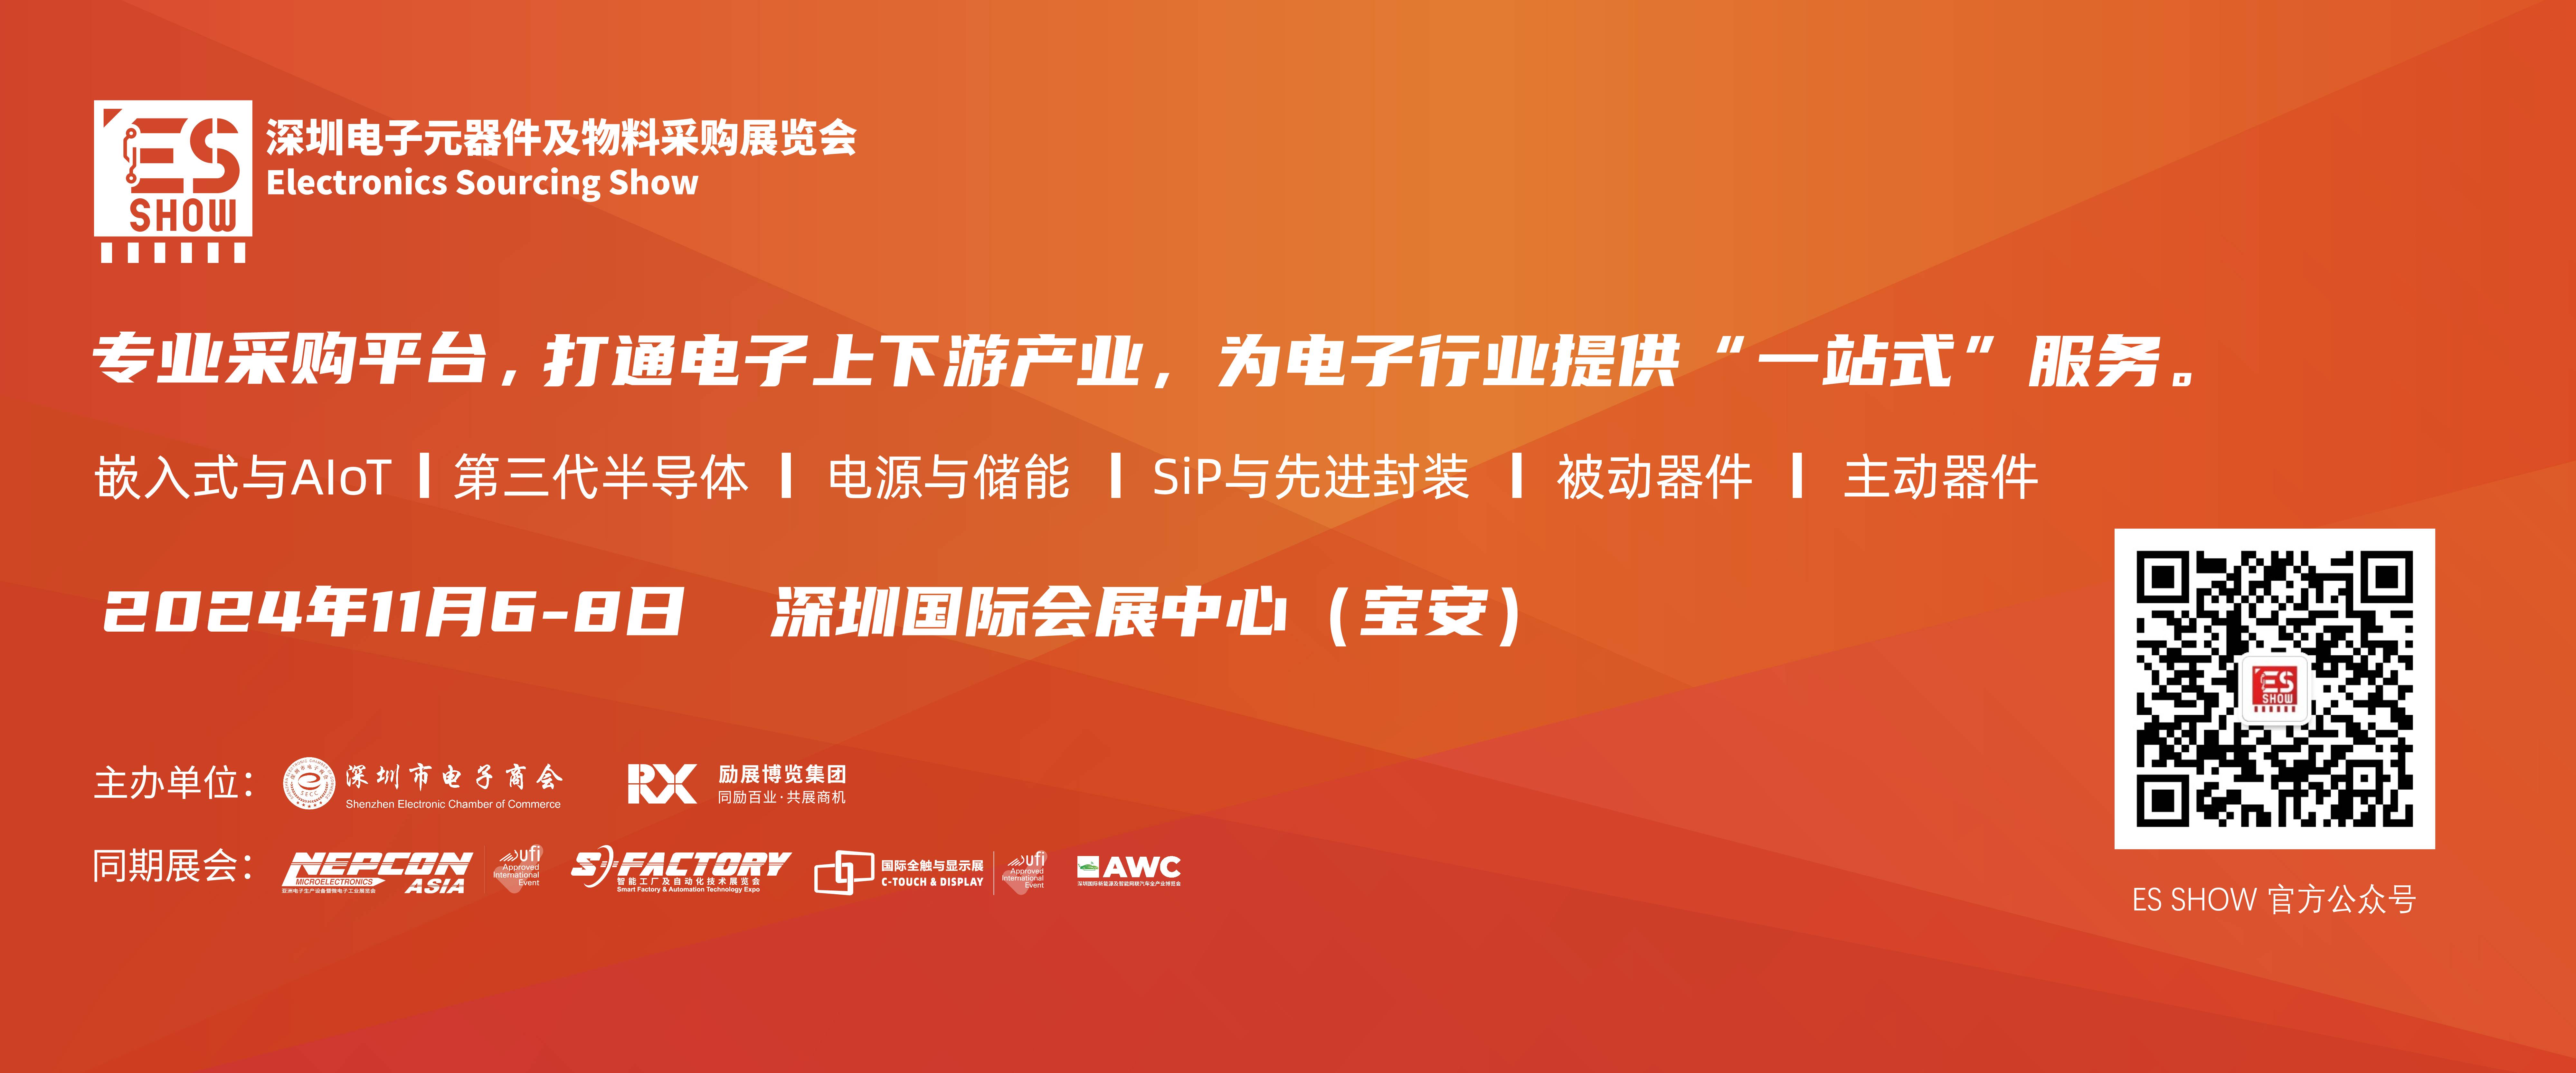 深圳电子展 功率器件 IGBT 华南电子展 中国电子展